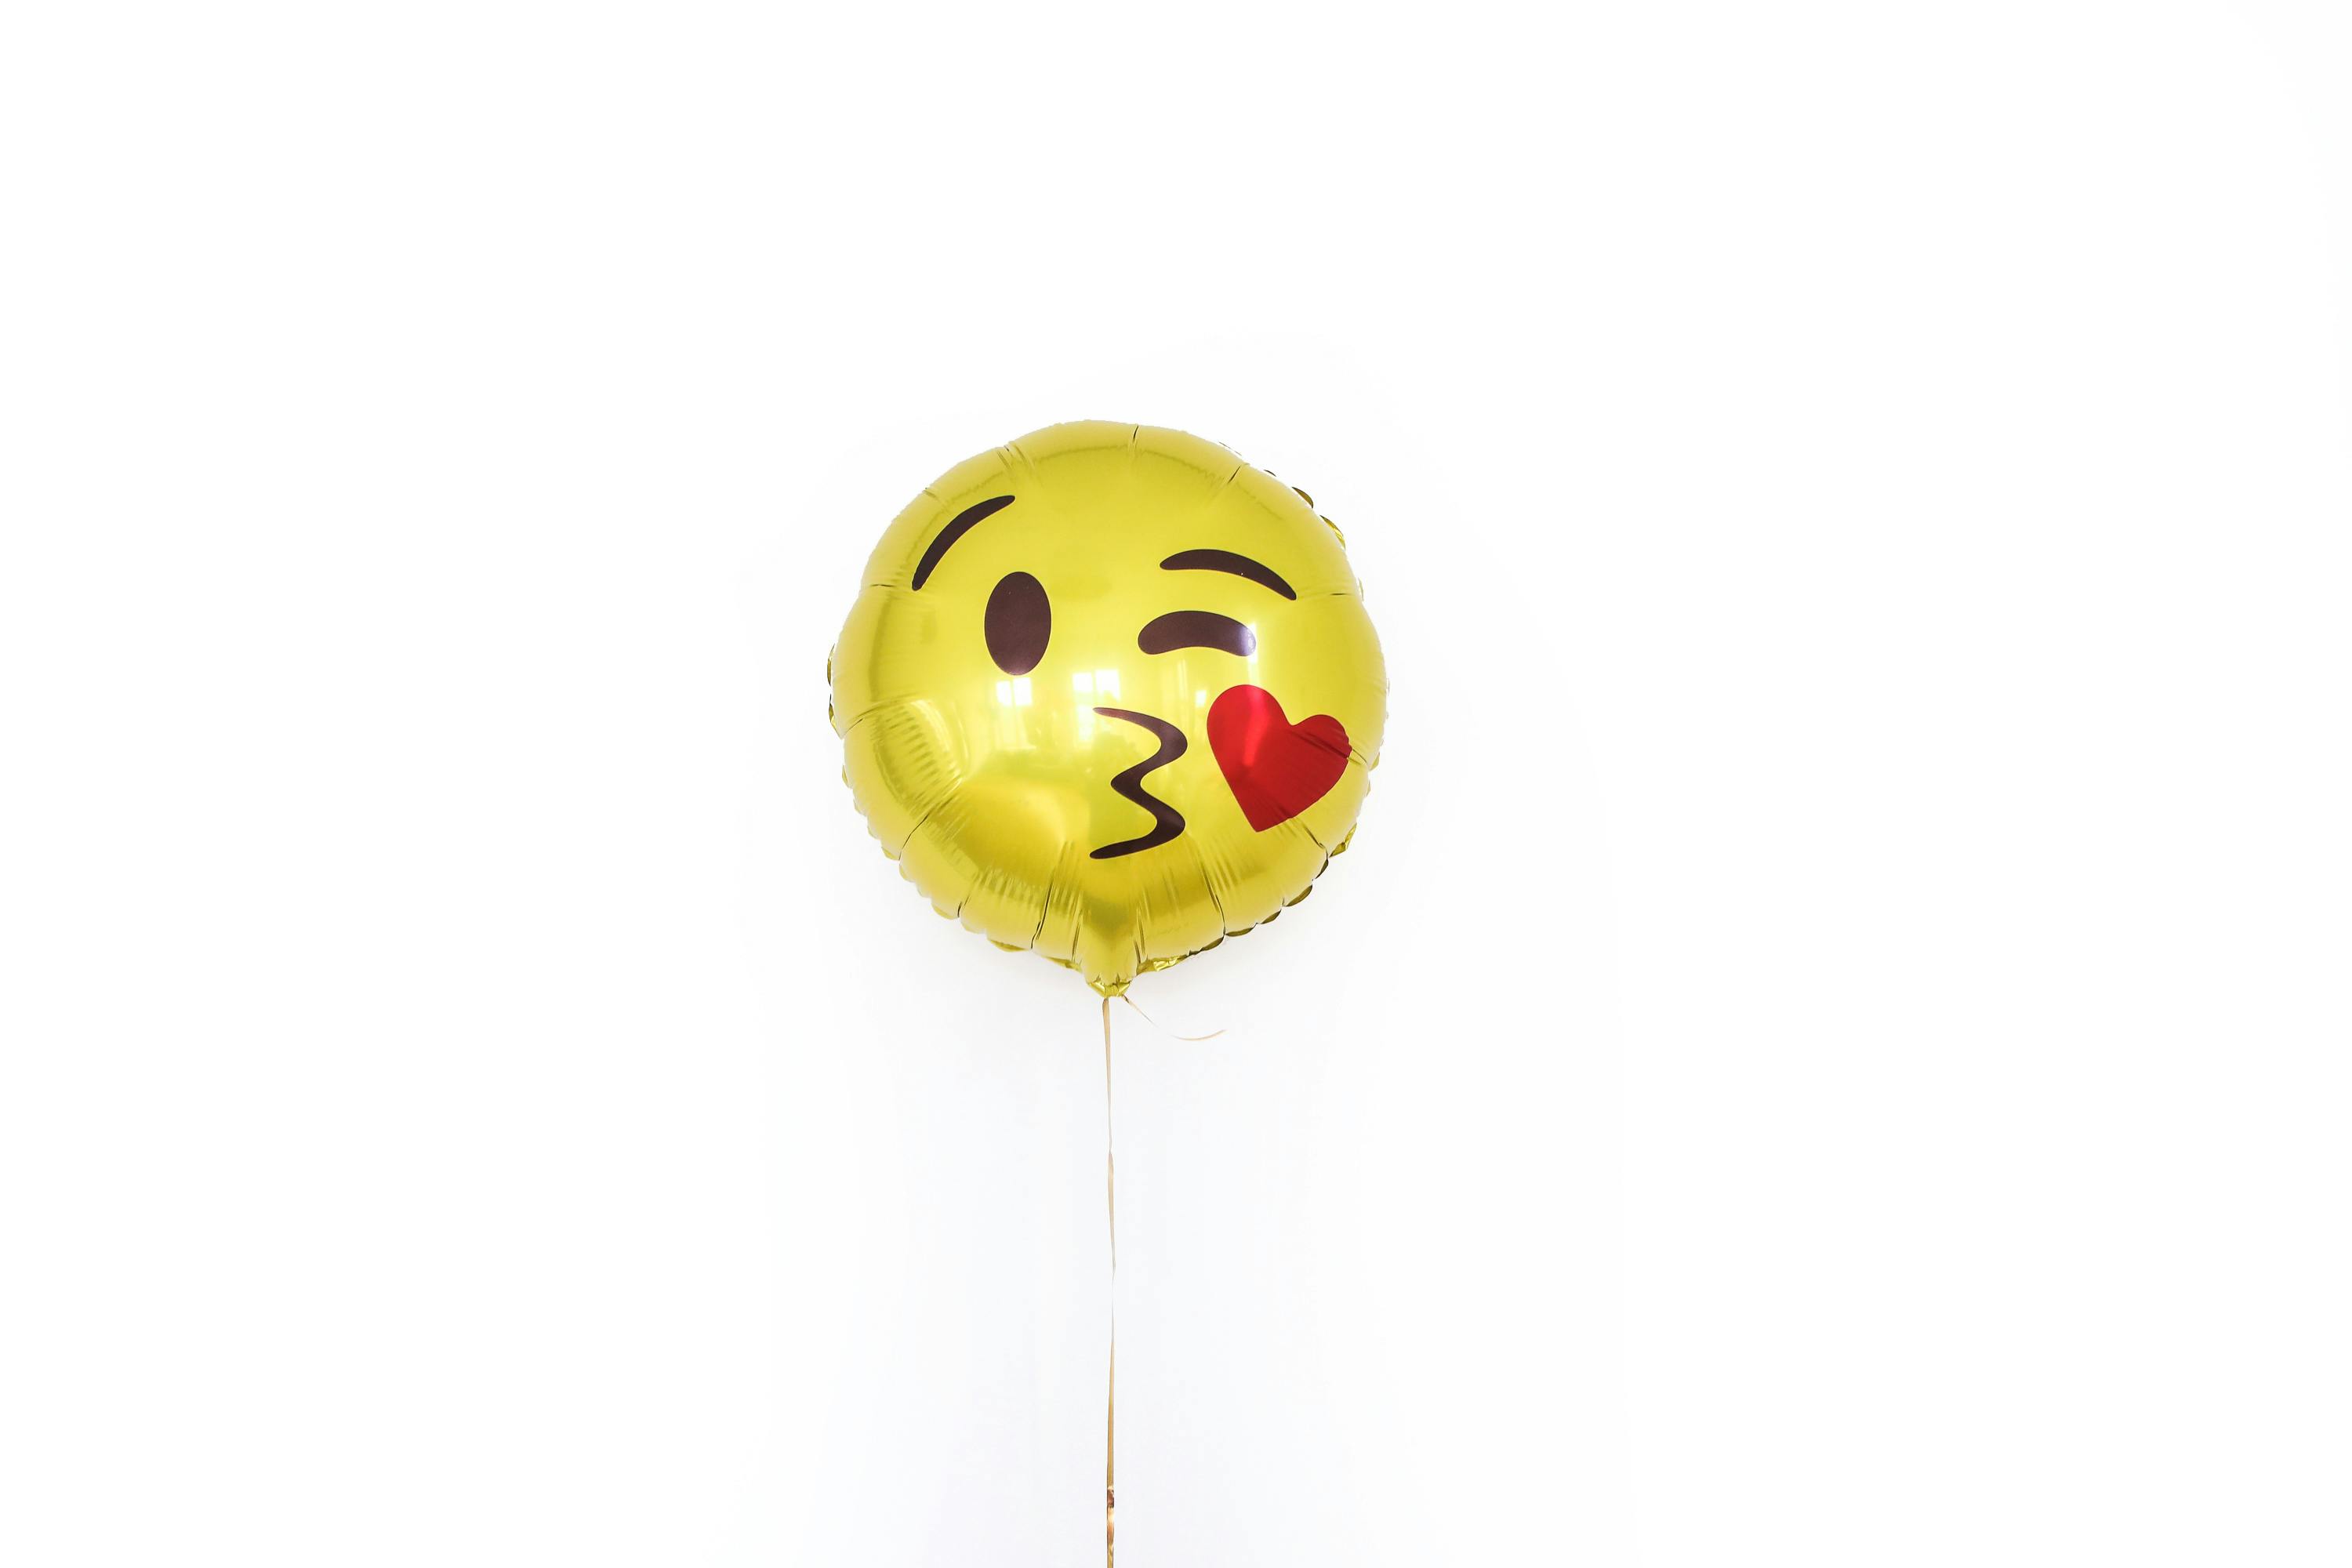 Chúc Mừng Lời Mời Thiệp Sinh Nhật Balloon Golden Background Hình minh họa  Sẵn có - Tải xuống Hình ảnh Ngay bây giờ - iStock